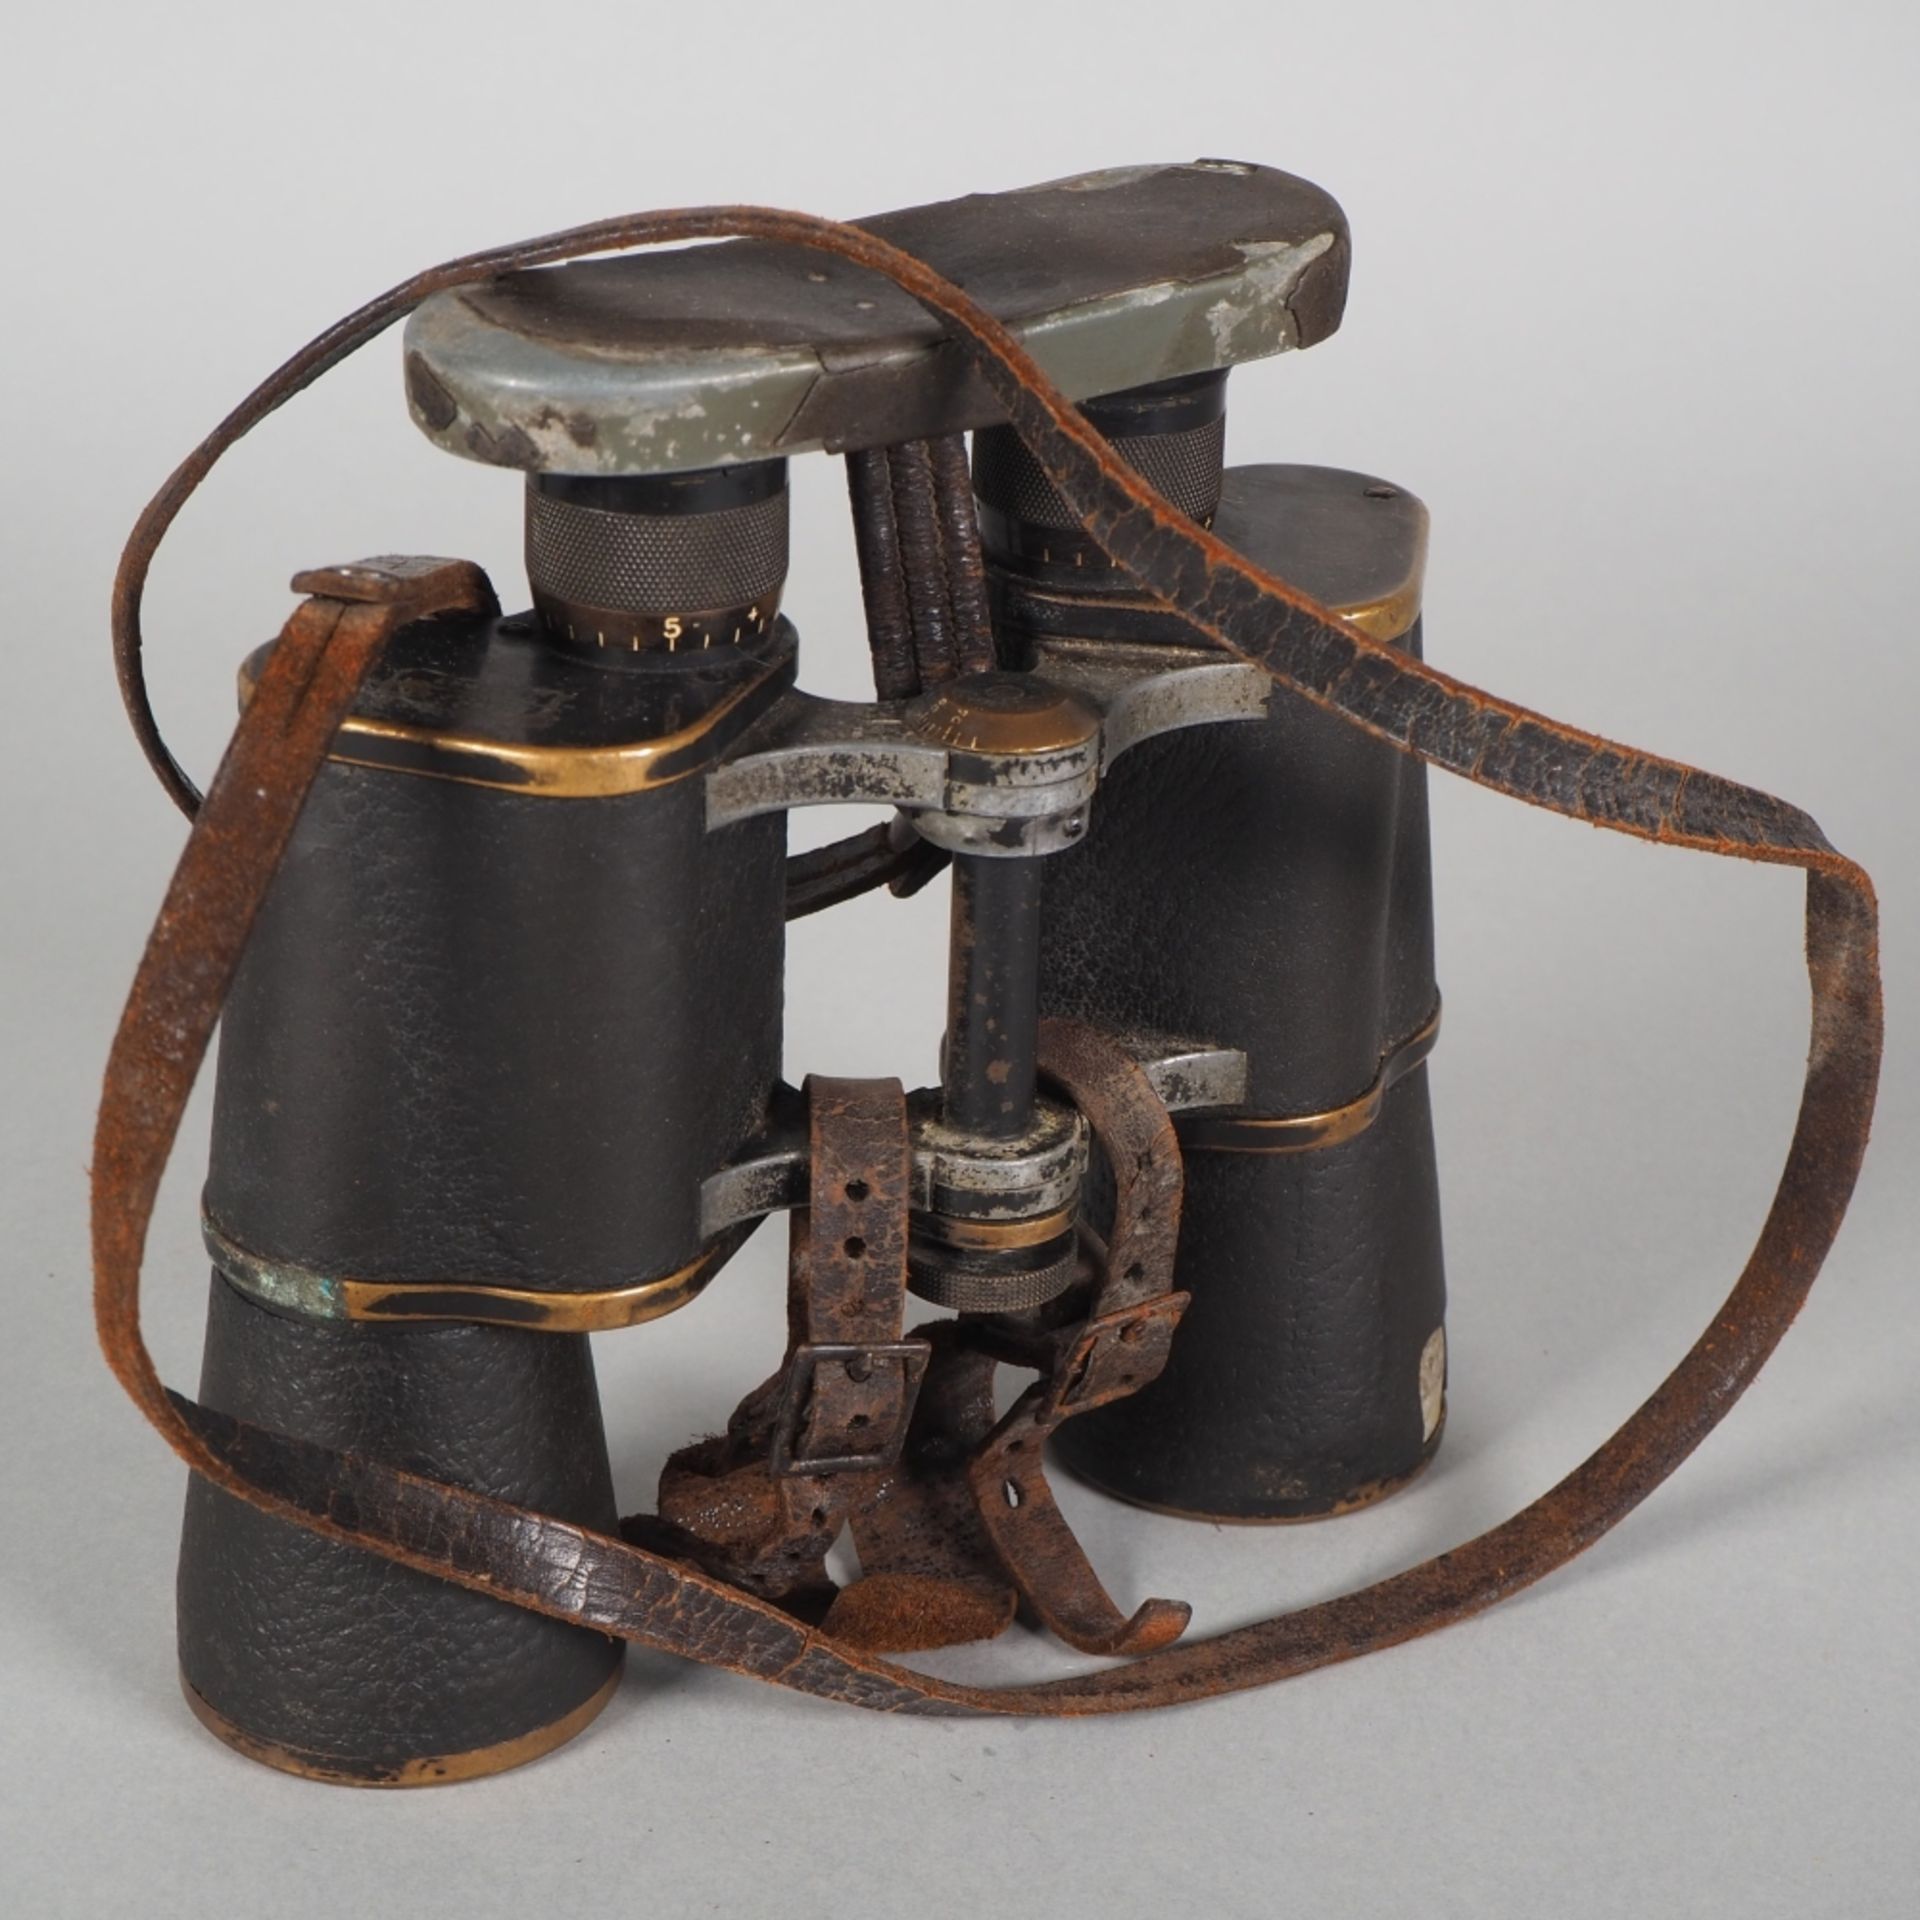 Very rare Carl Zeiss naval binoculars in Telumact design 8x40, around 1915